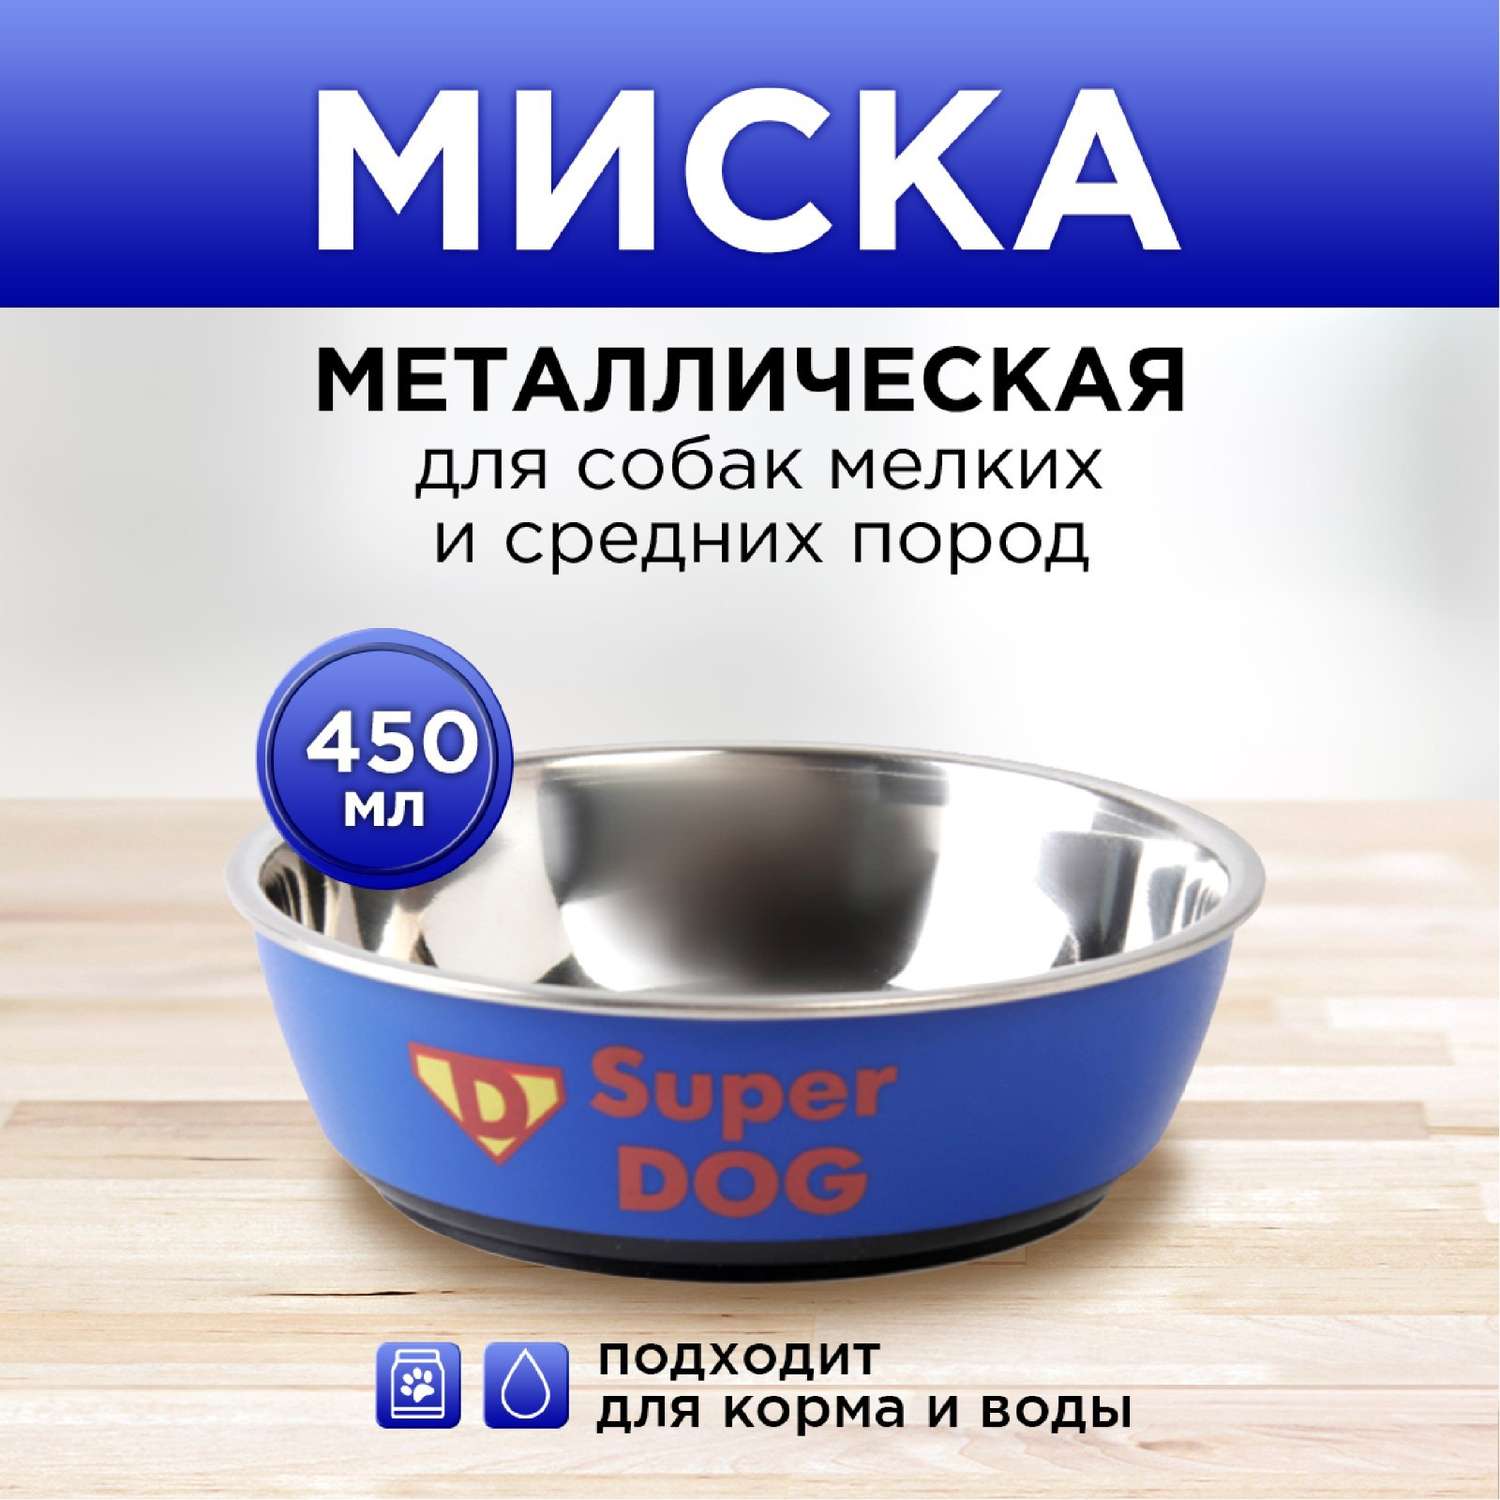 Миска Пушистое счастье металлическая для собаки Super dog 450 мл 14х4.5 см - фото 1